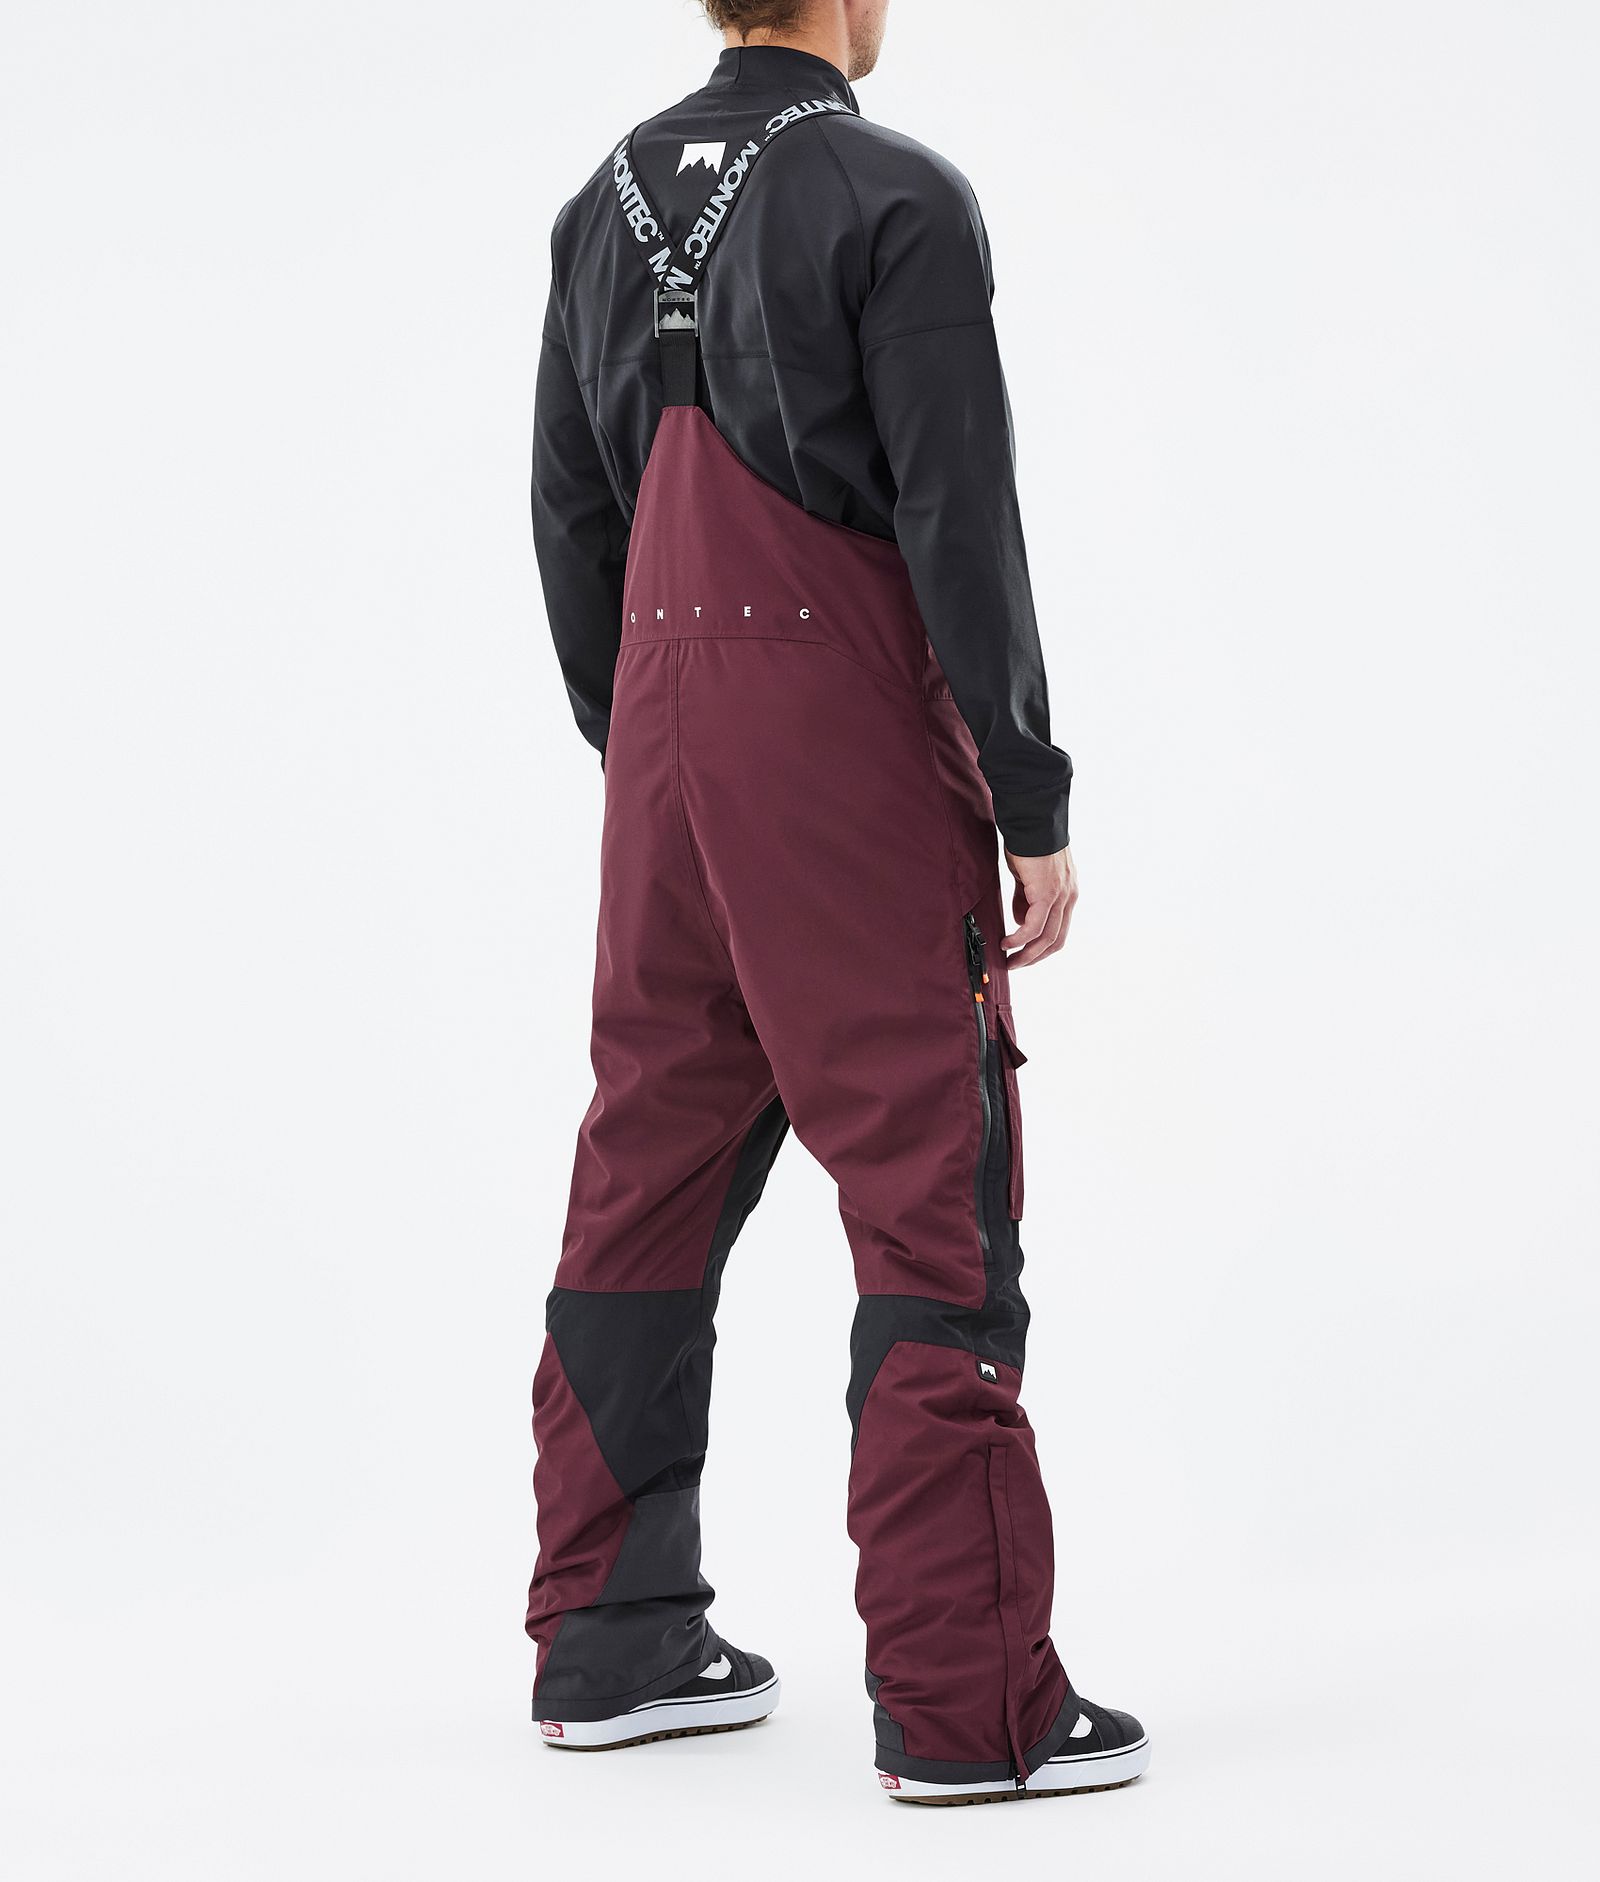 Fawk Spodnie Snowboardowe Mężczyźni Burgundy/Black